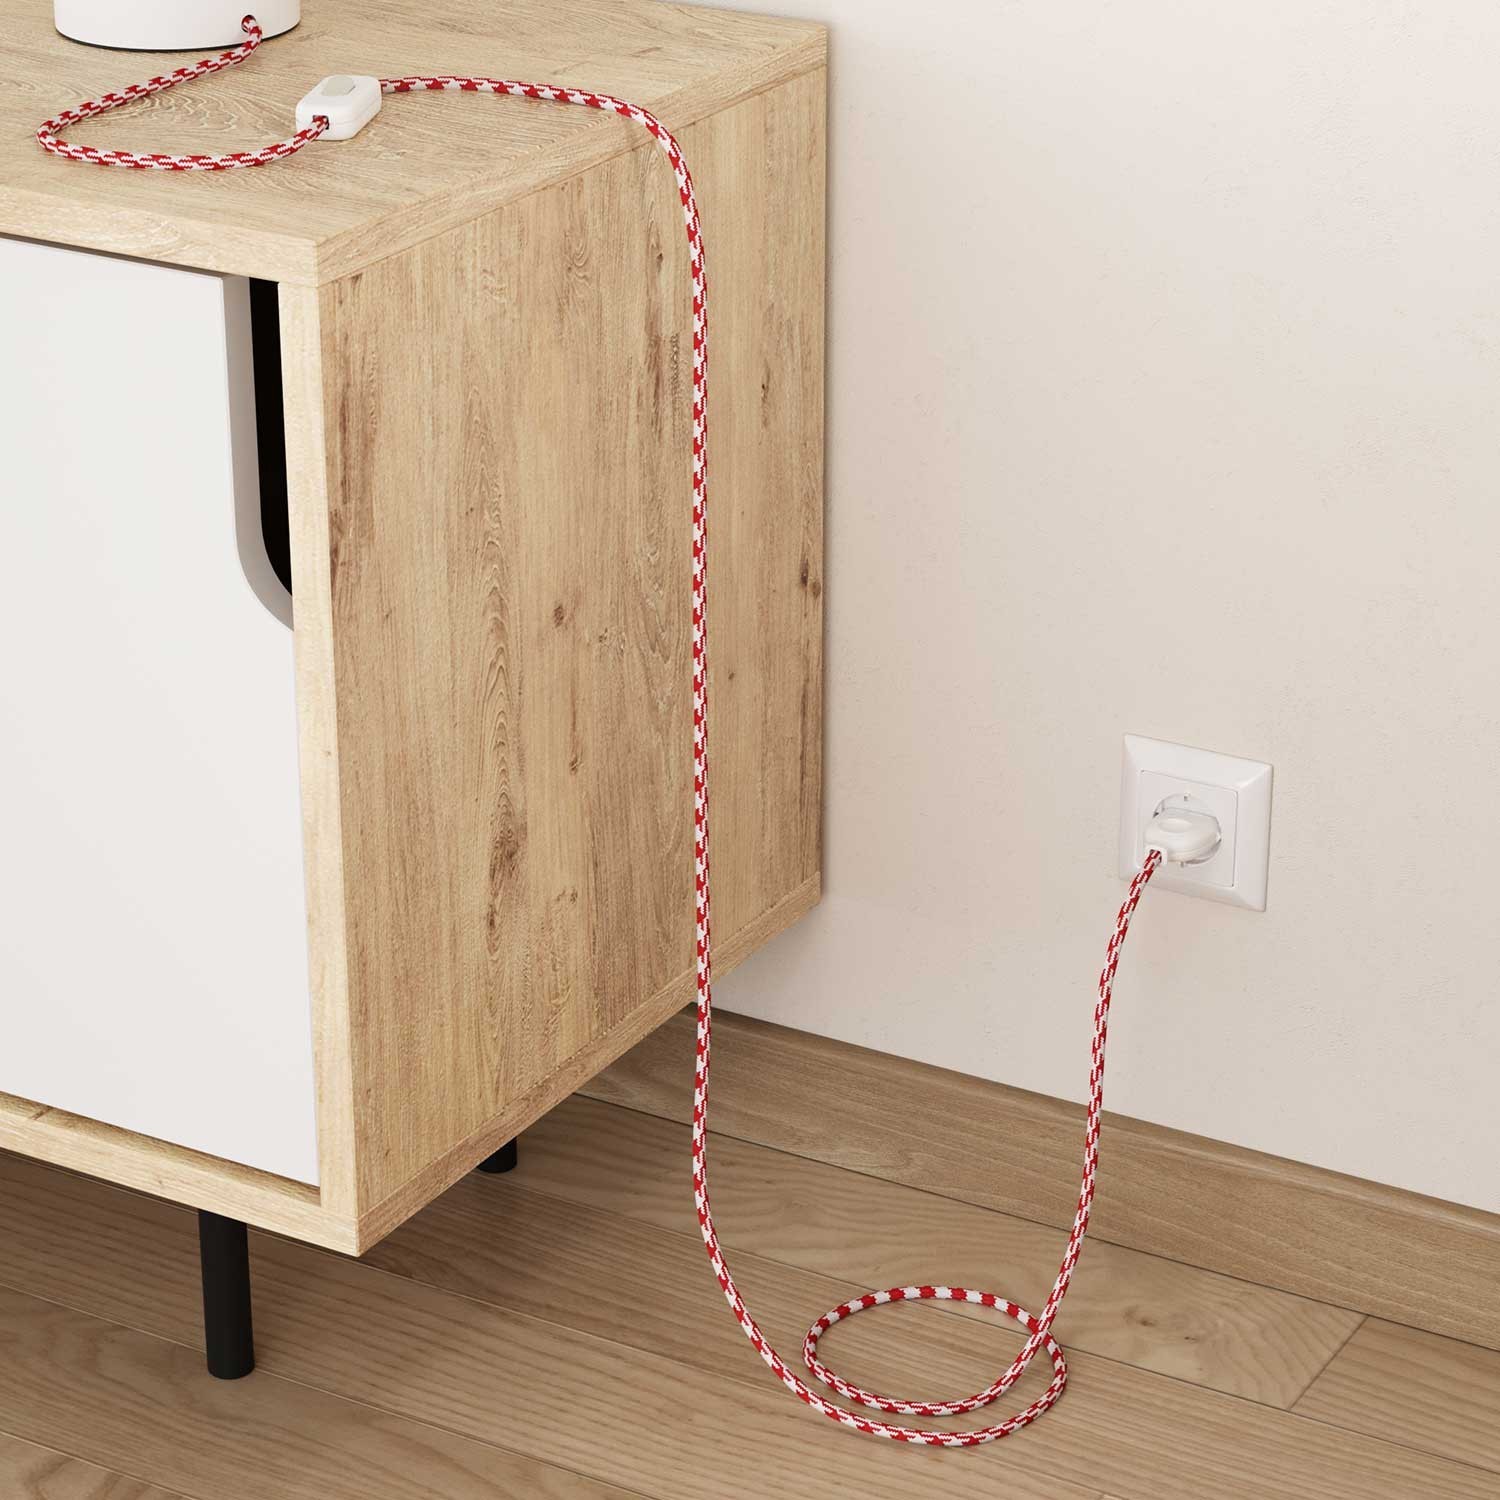 Câble textile Rouge Feu et Blanc Optique Pied de Poule brillant - L'Original Creative-Cables - RP09 rond 2x0,75mm / 3x0,75mm